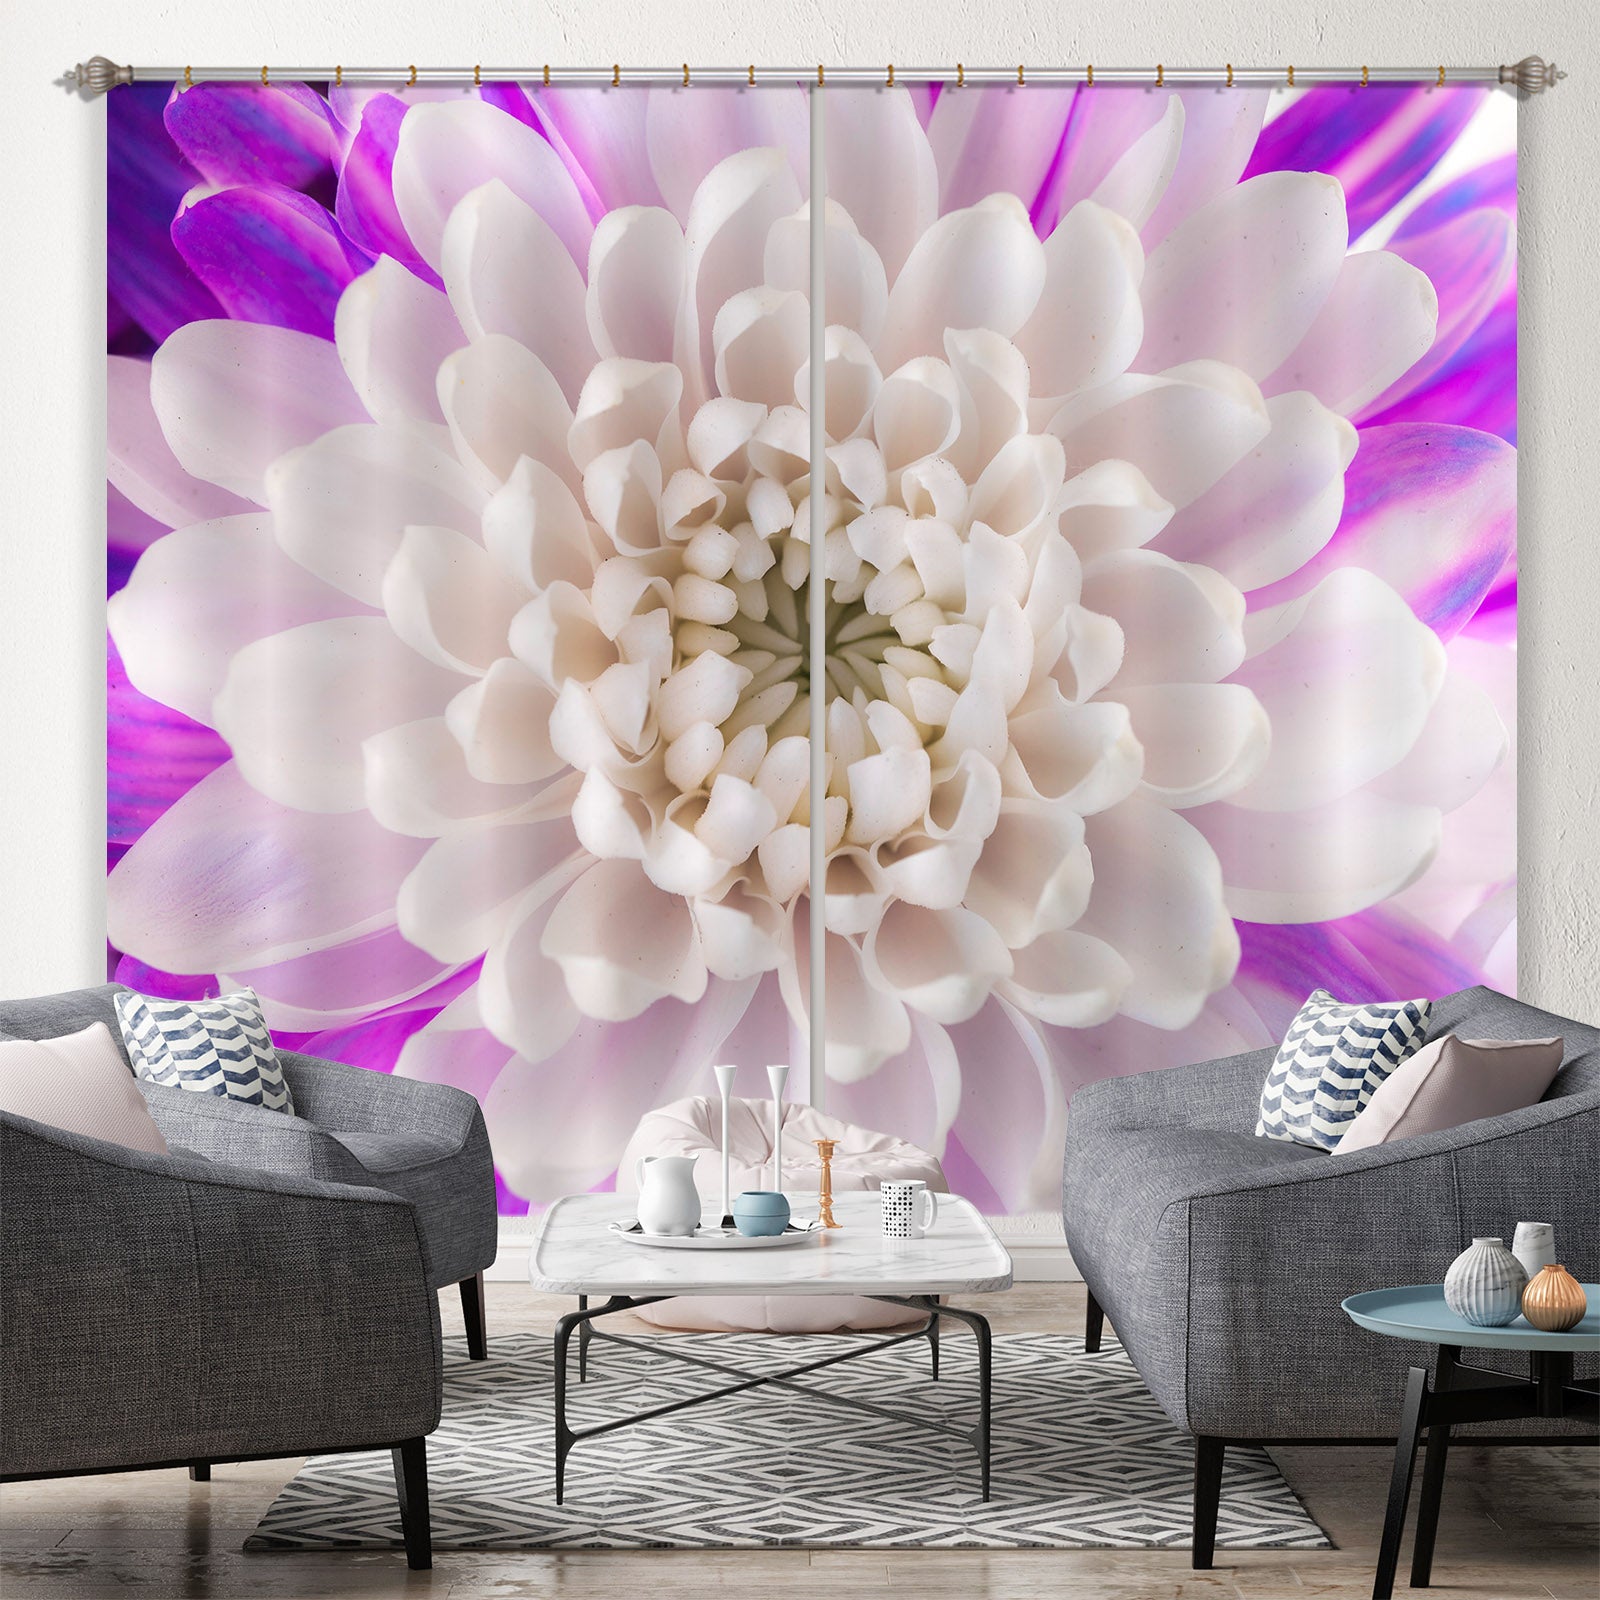 3D White Petals 223 Assaf Frank Curtain Curtains Drapes